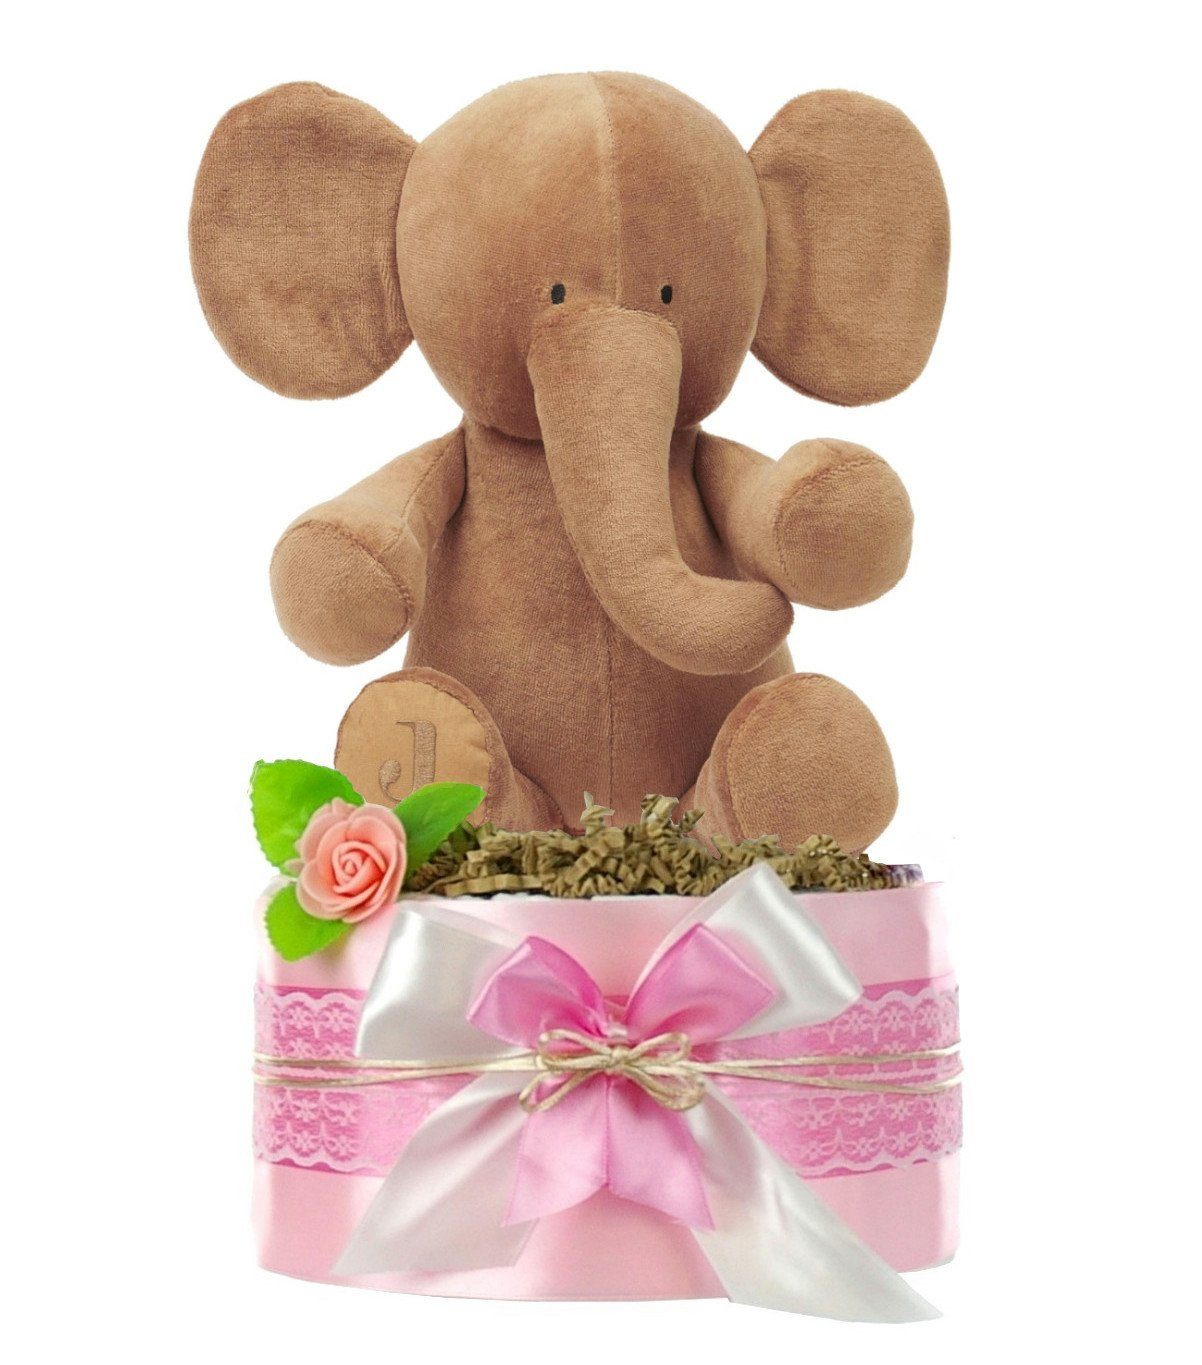 dubistda-WINDELTORTEN- Neugeborenen-Geschenkset Windeltorte Mädchen LITTLE PEANUT + kuscheliger Elefant, Babyparty